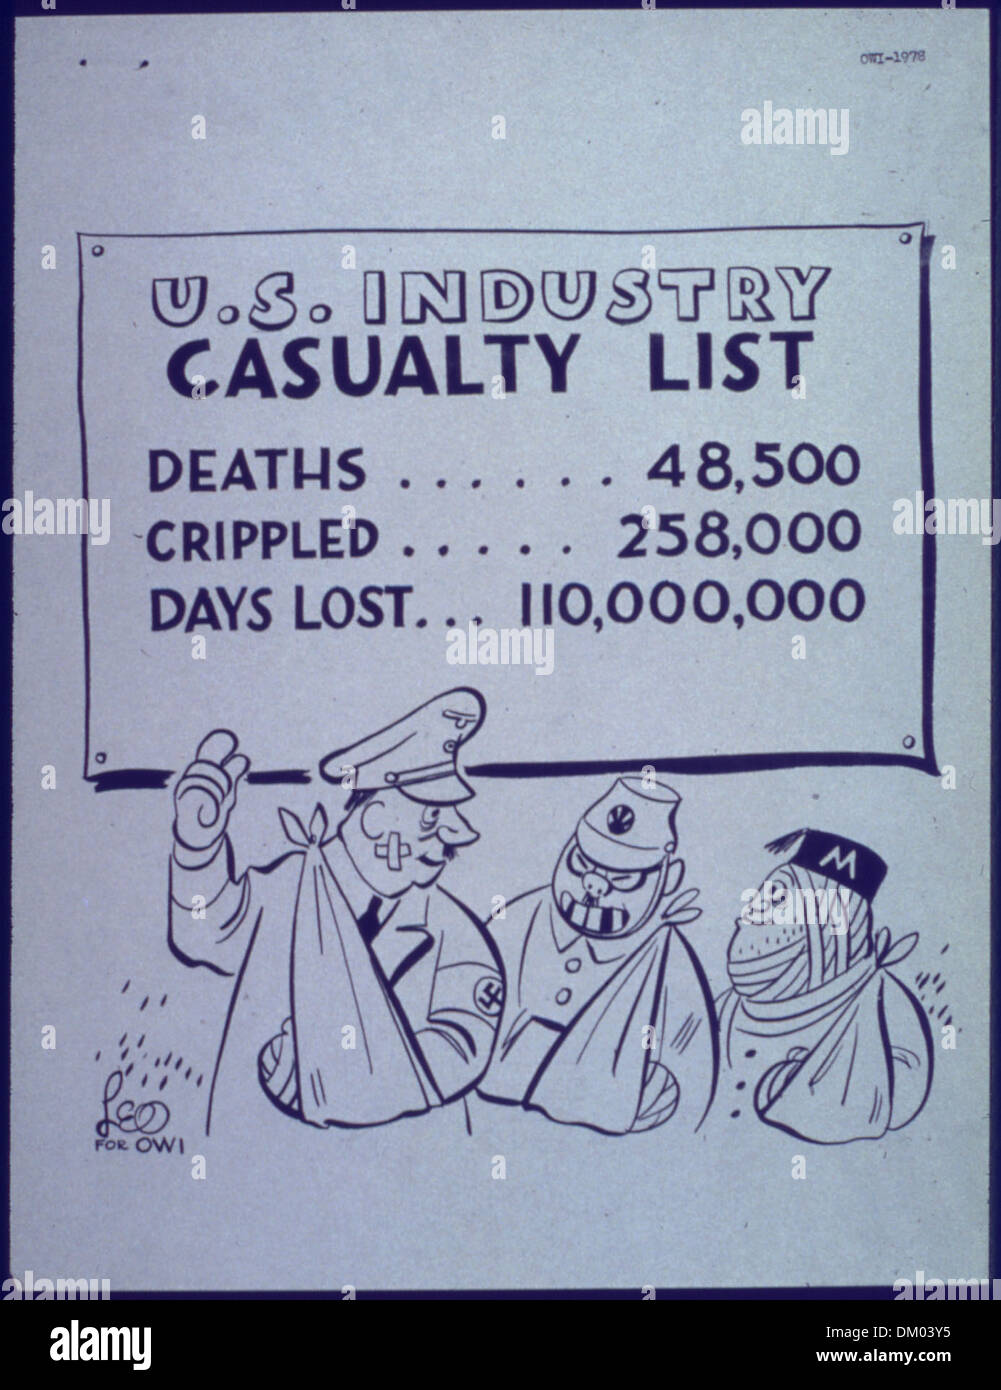 'Axidunce cartoon' - U.S. industry casualty list 513901 Stock Photo